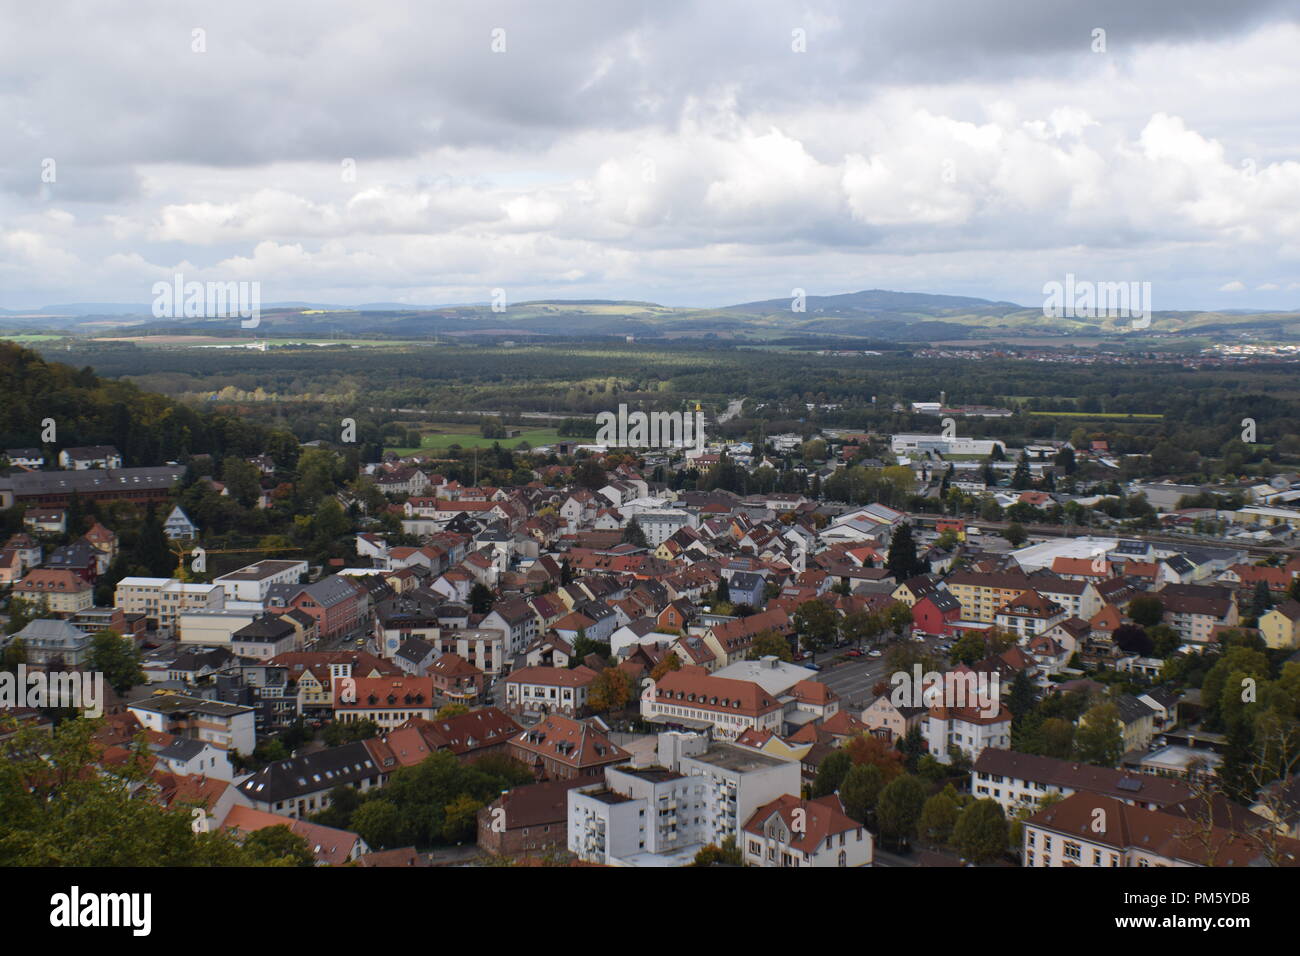 Landstuhl Germany Stockfotos und -bilder Kaufen - Alamy